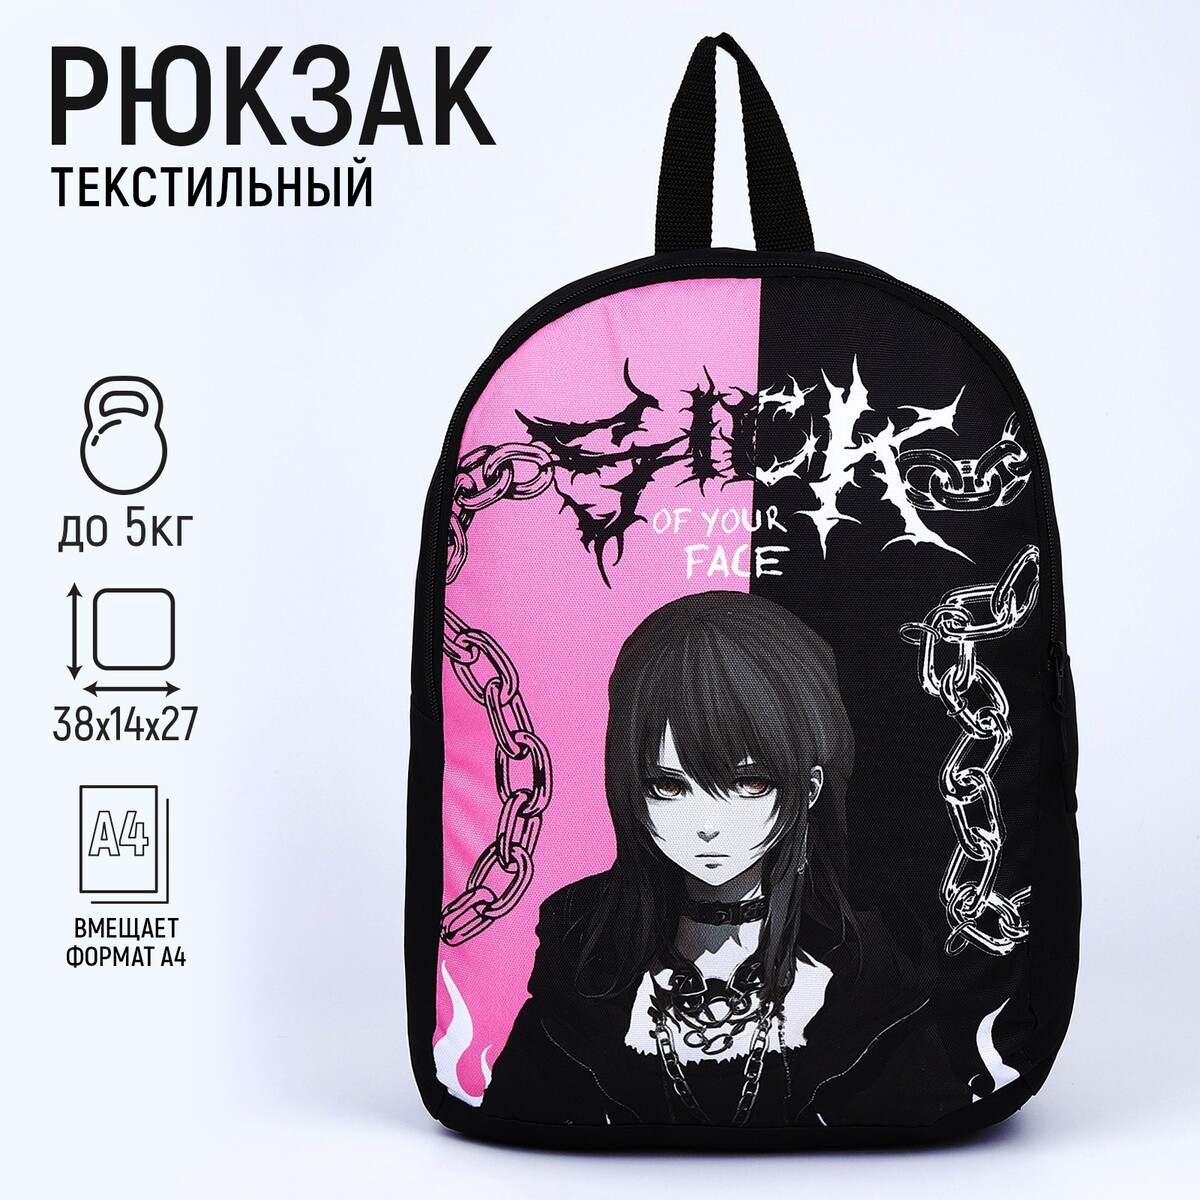 Рюкзак текстильный аниме, 38х14х27 см, цвет черный, розовый